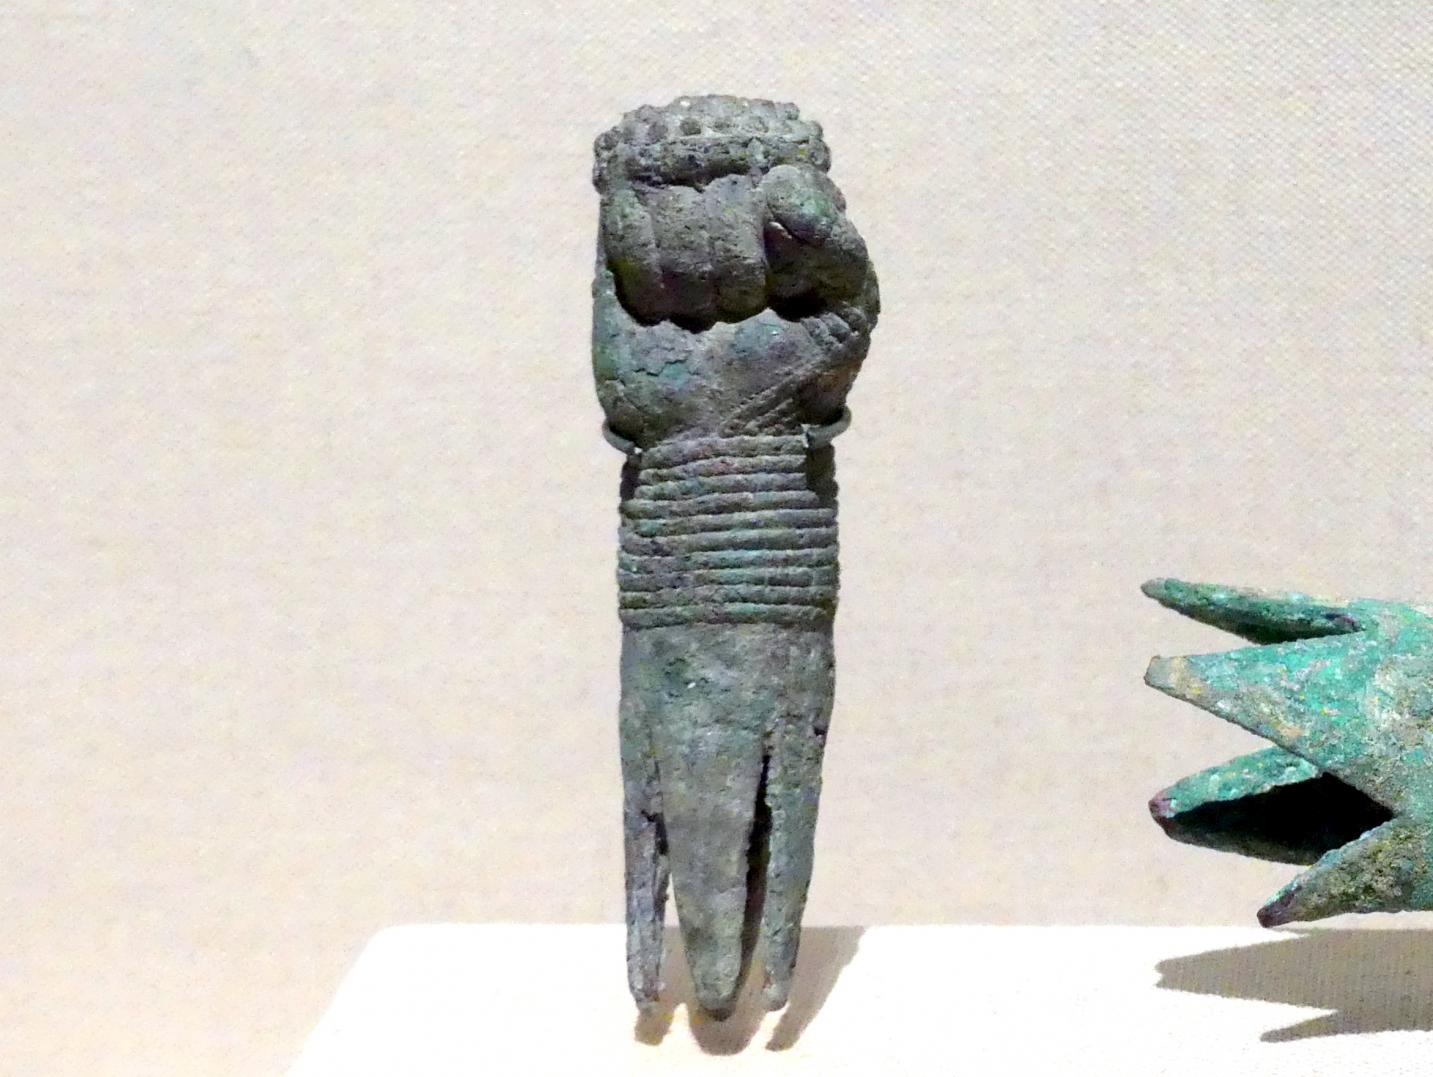 Objekt in Form einer geballten Faust, 2200 - 1800 v. Chr., Bild 1/2